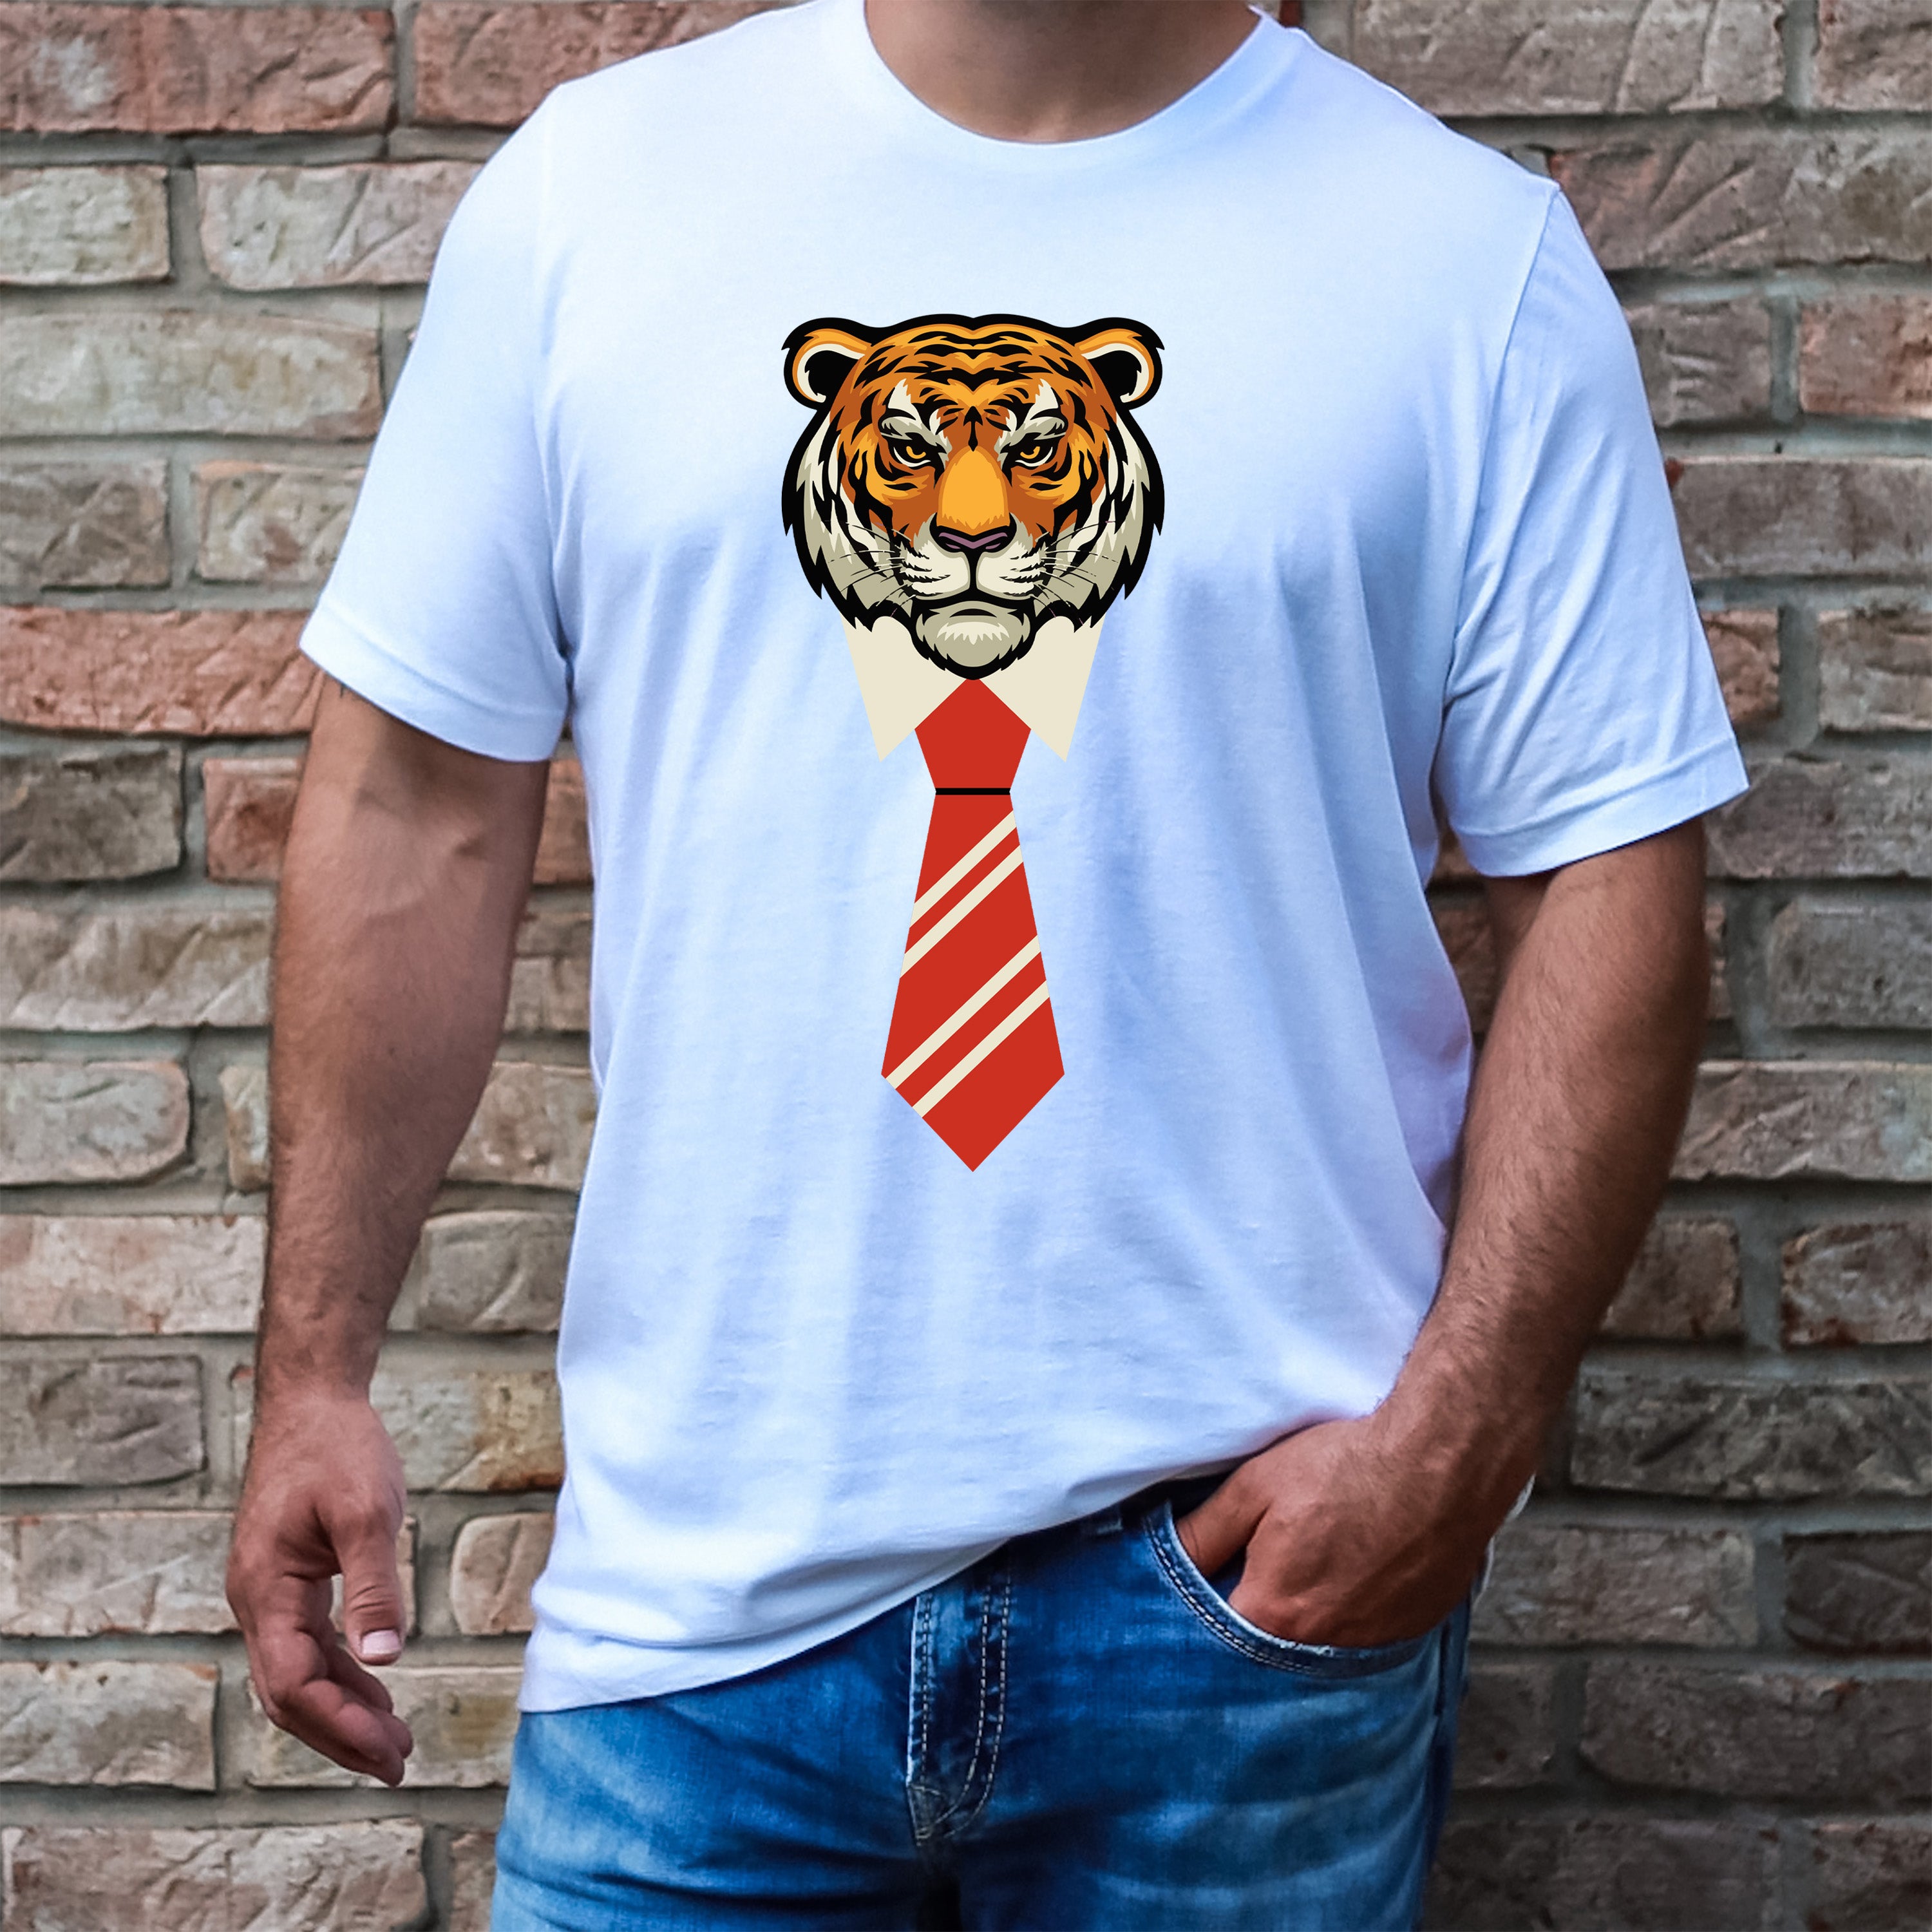 Tiger With Tie - Men's Tee